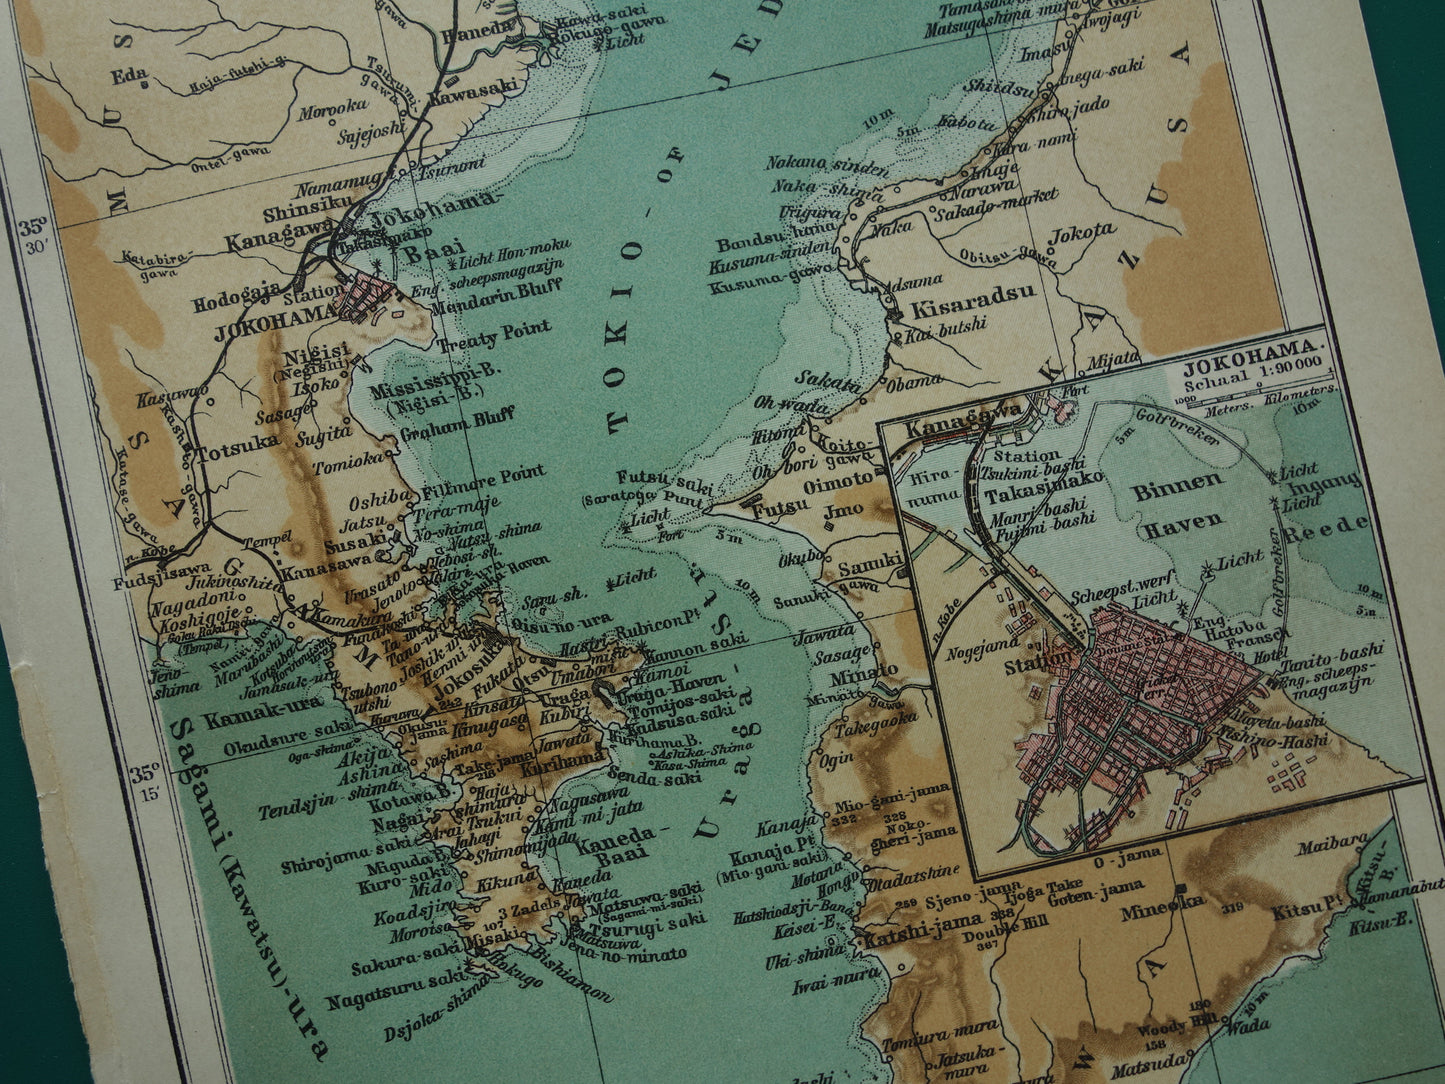 Oude kaart van Tokyo Yokohama Japan originele kleine antieke Nederlandse landkaart baai van Tokio